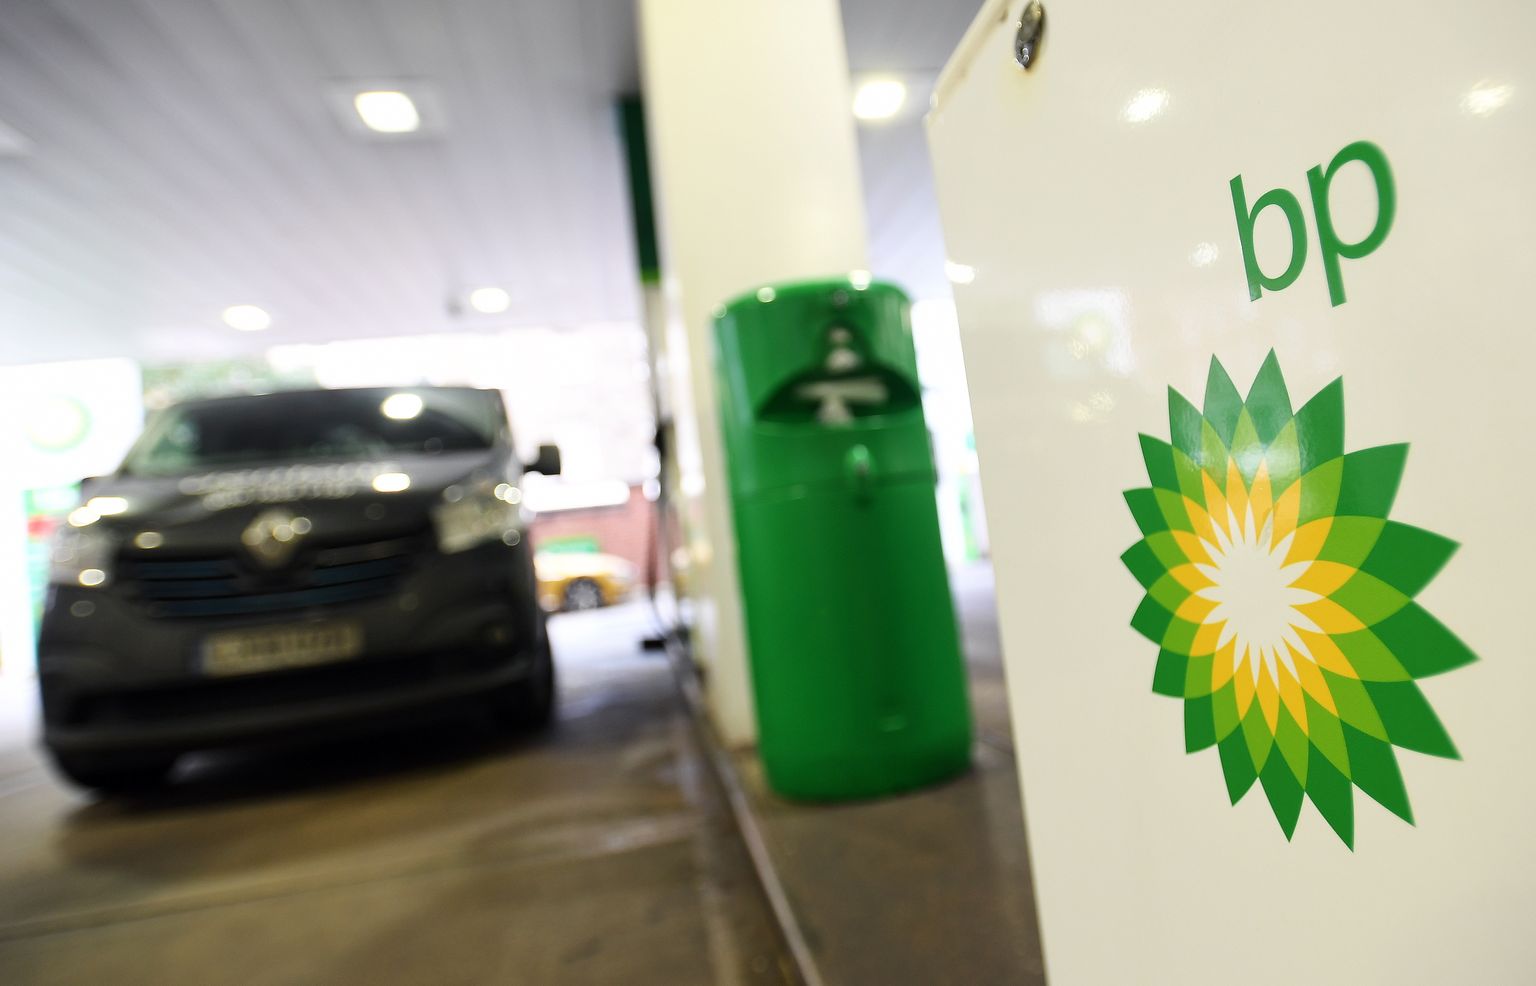 Ühendkungriigi kütusefirma BP (British Petroleum).